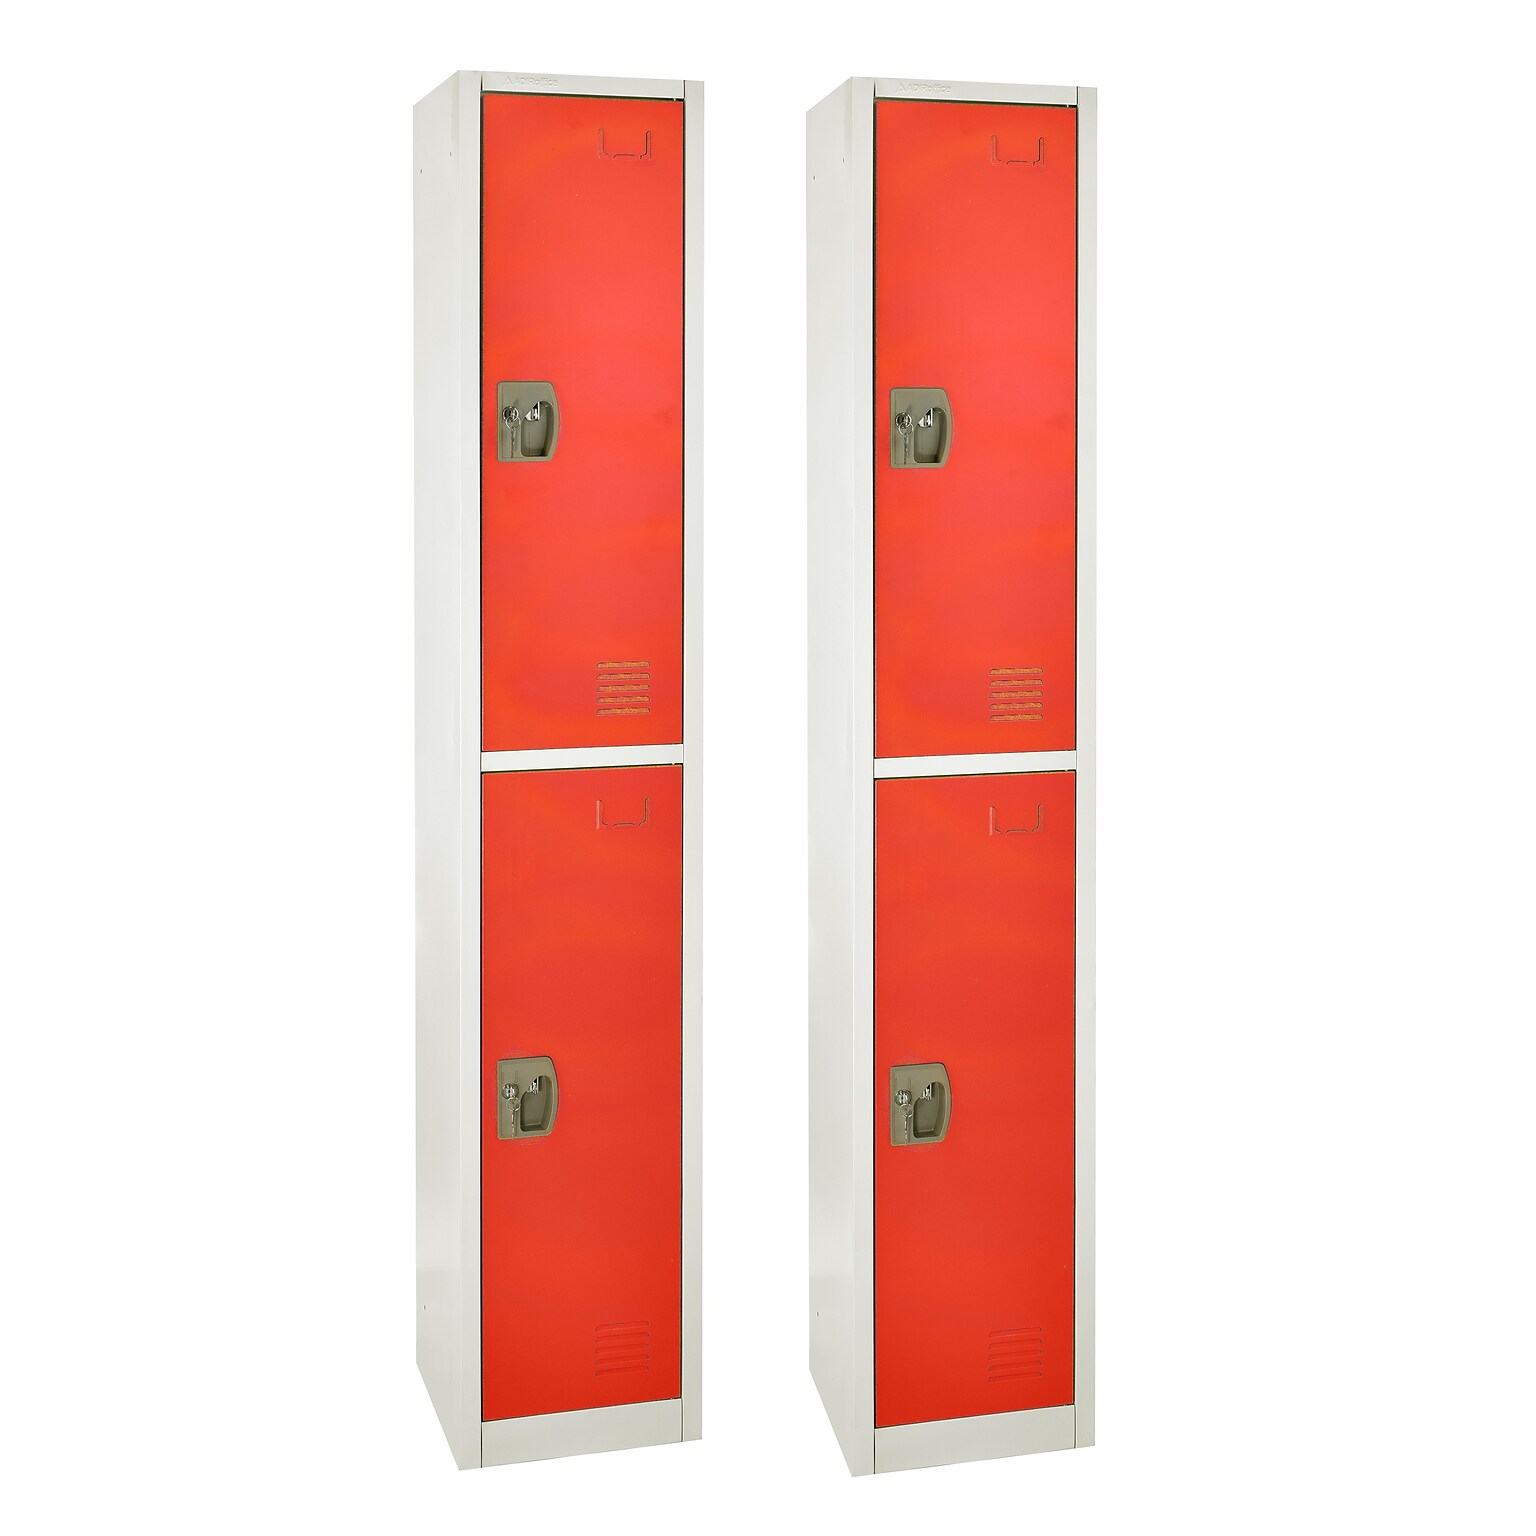 AdirOffice 72 2-Tier Key Lock Red Steel Storage Locker, 2/Pack (629-202-RED-2PK)